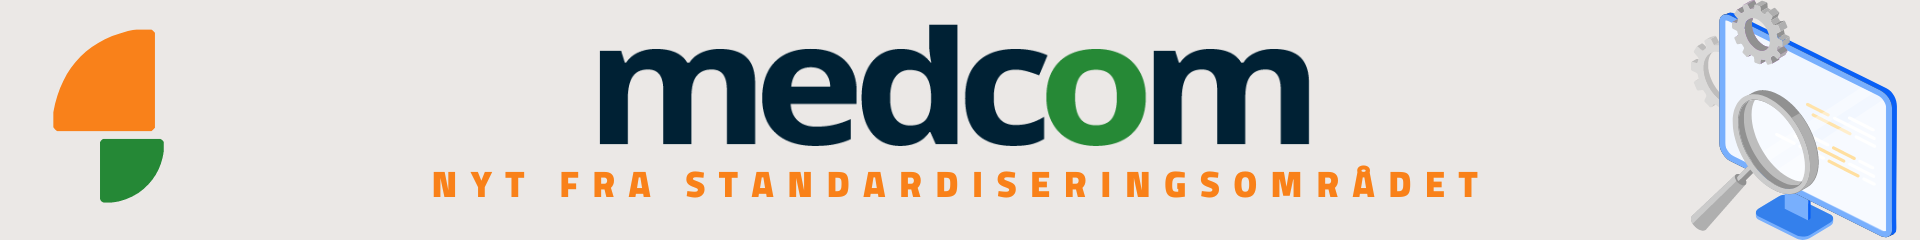 MedCom-logo